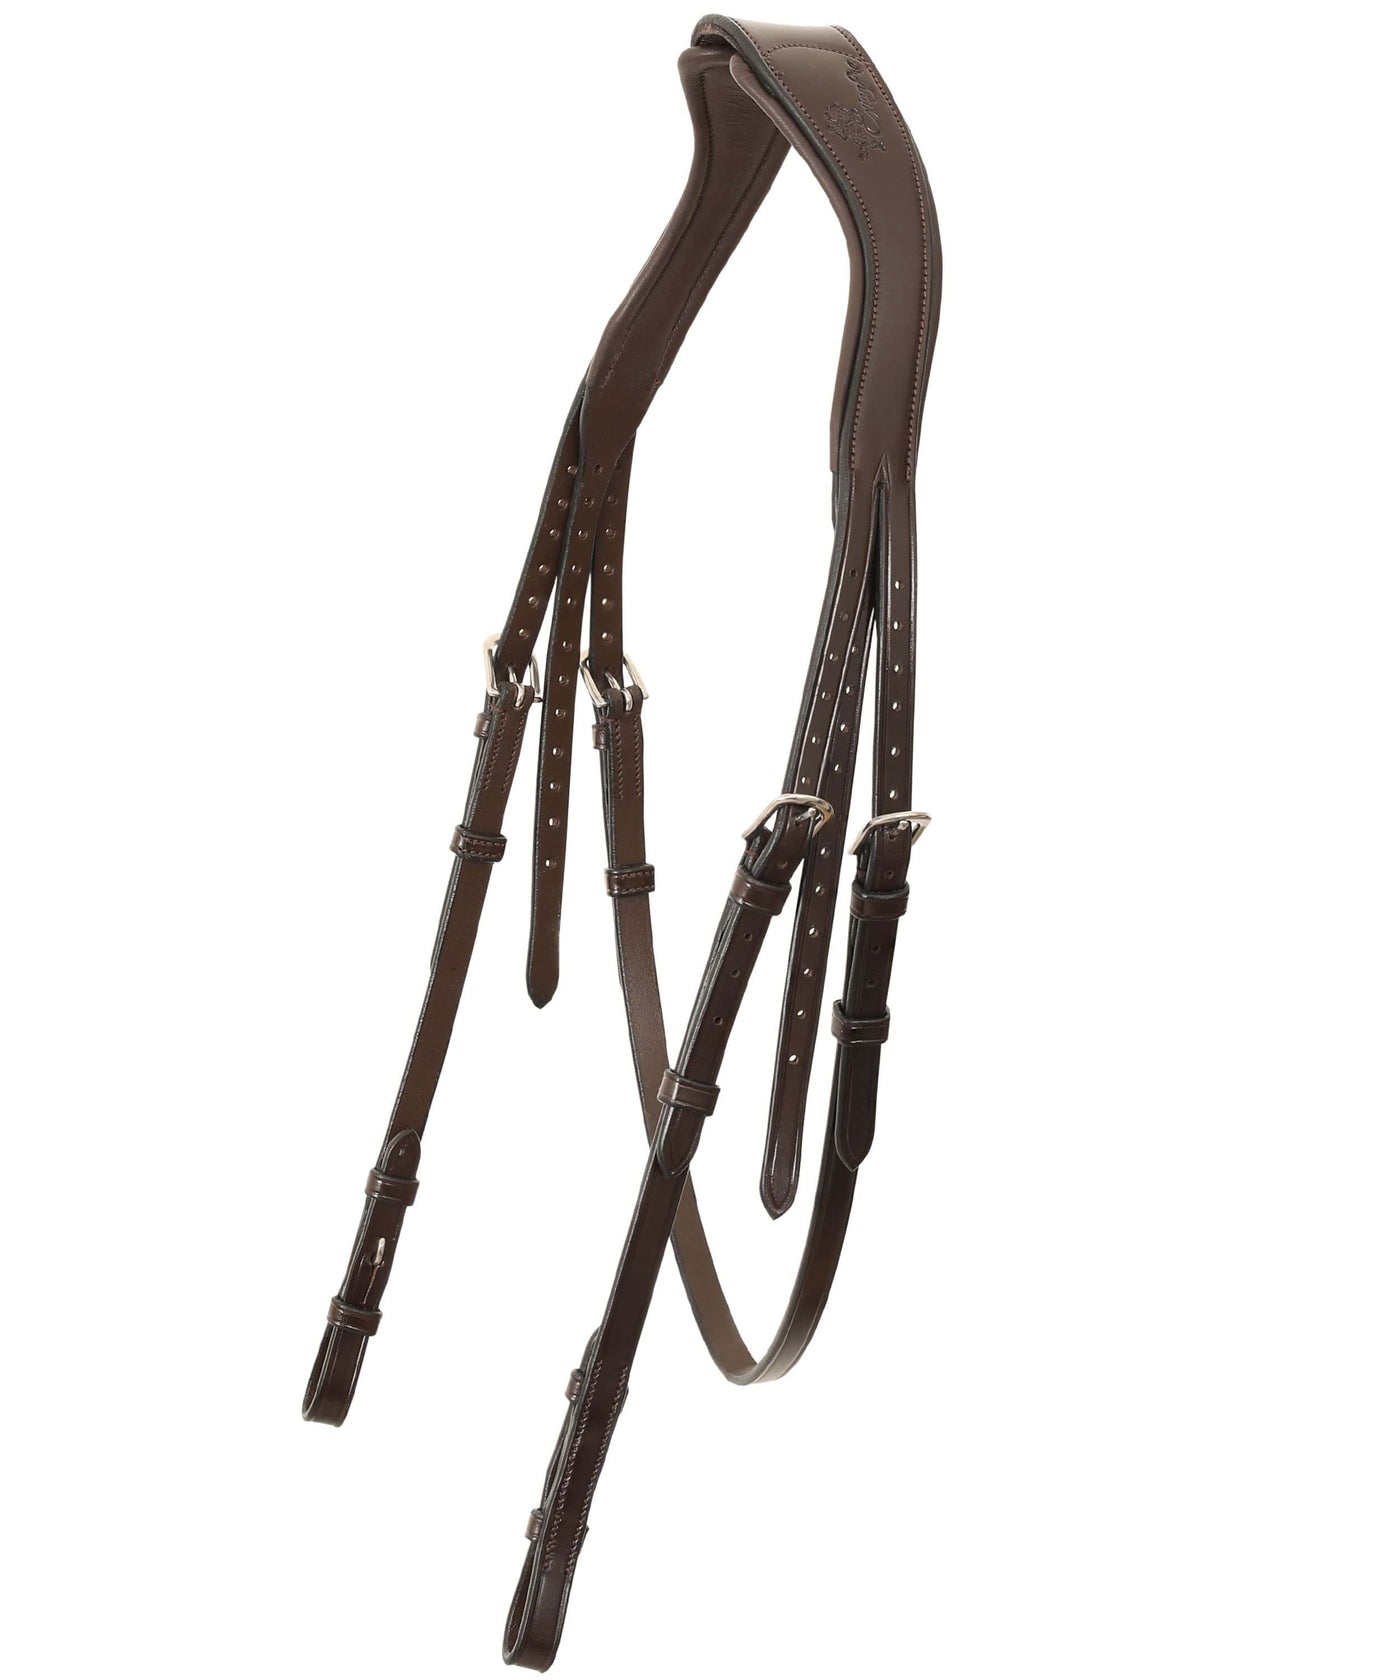 ExionPro 'Ursa' Anatomic Dressage Bridle With Reins